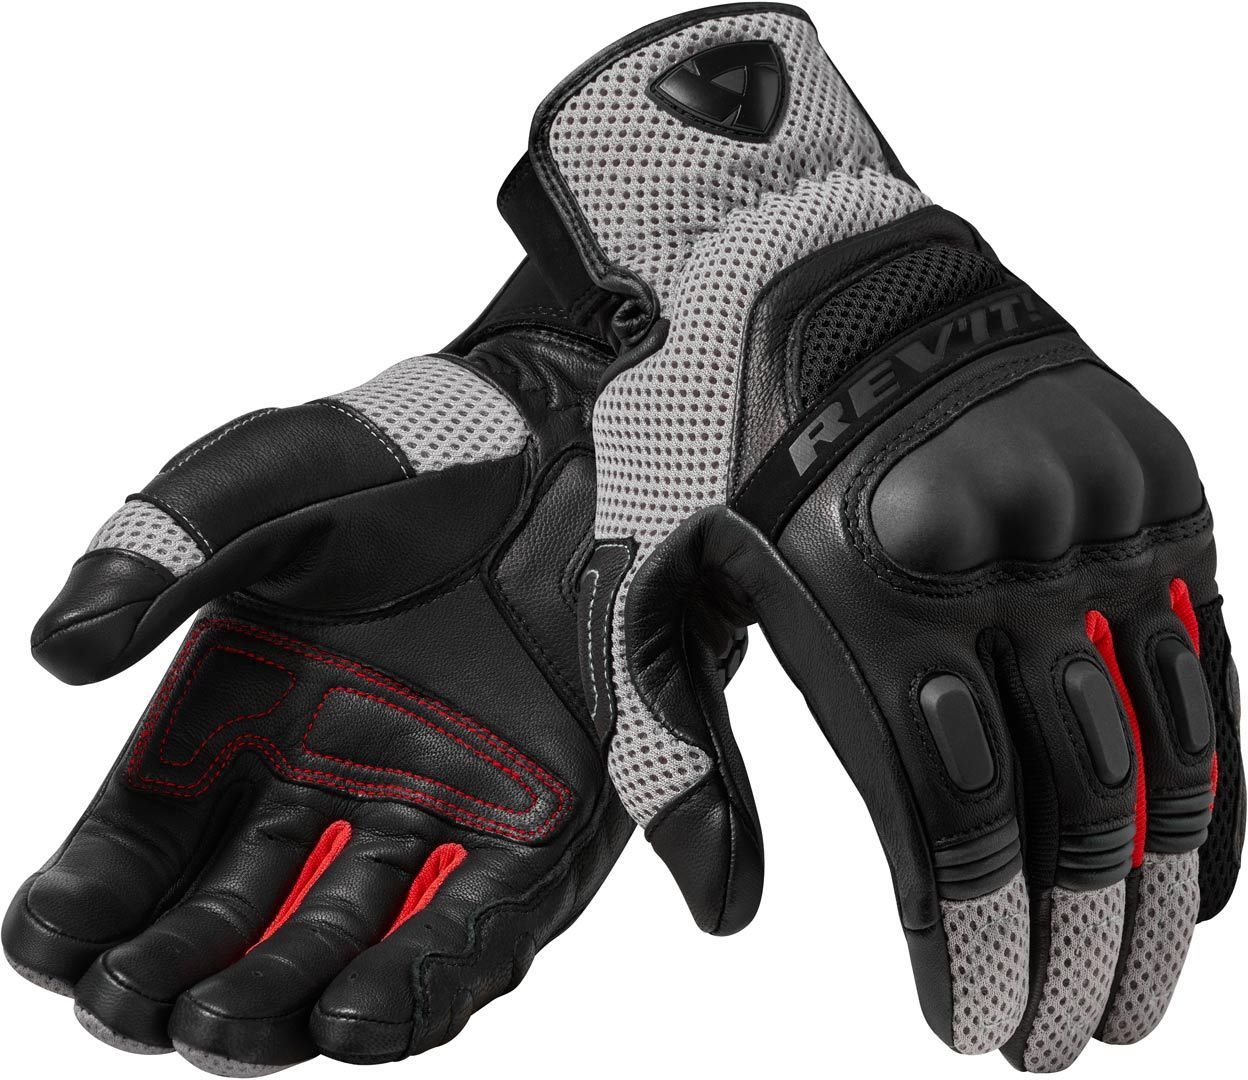 Revit Dirt 3 Motocross Handschuhe, schwarz-rot, Größe XL, schwarz-rot, Größe XL